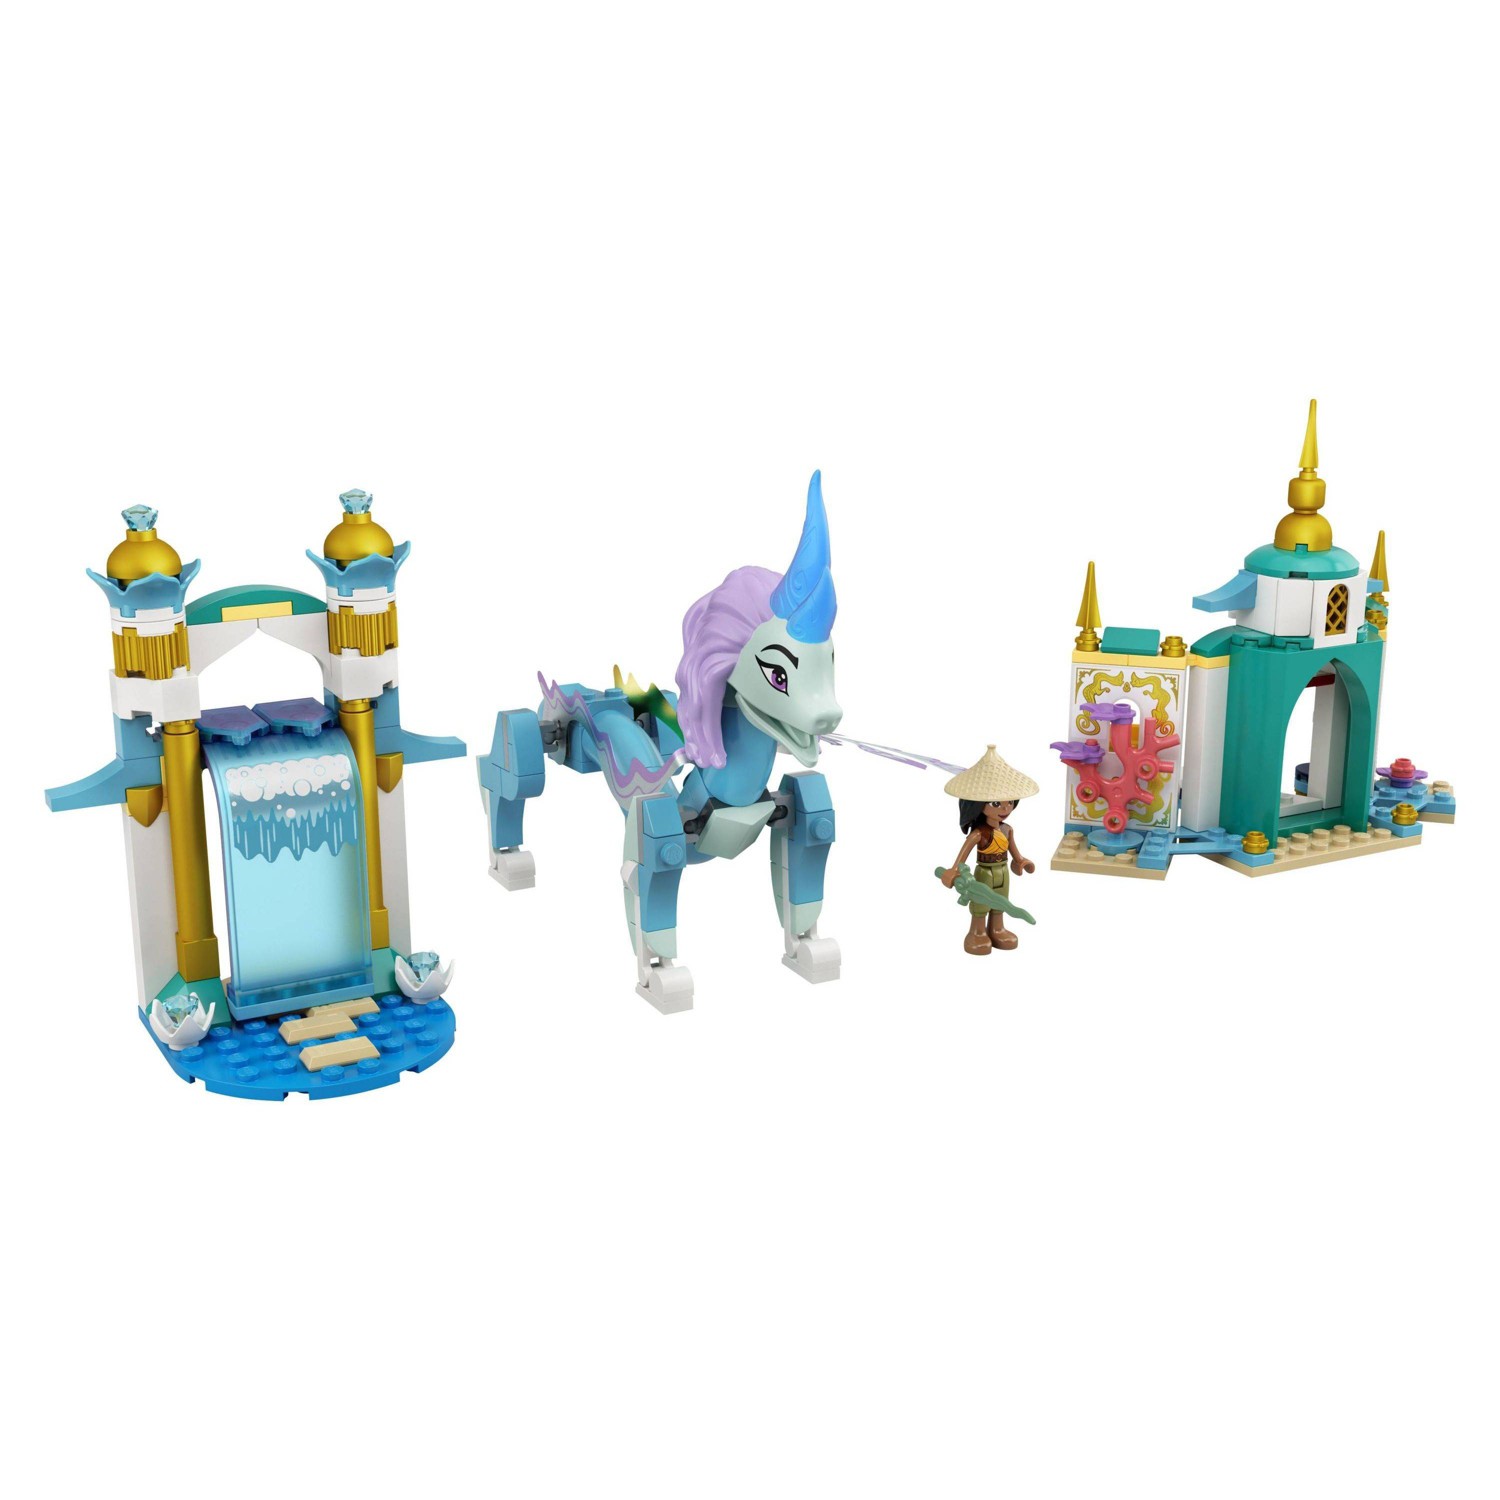 LEGO Disney Raya and Sisu Dragon Building Toy 43184 $17.99